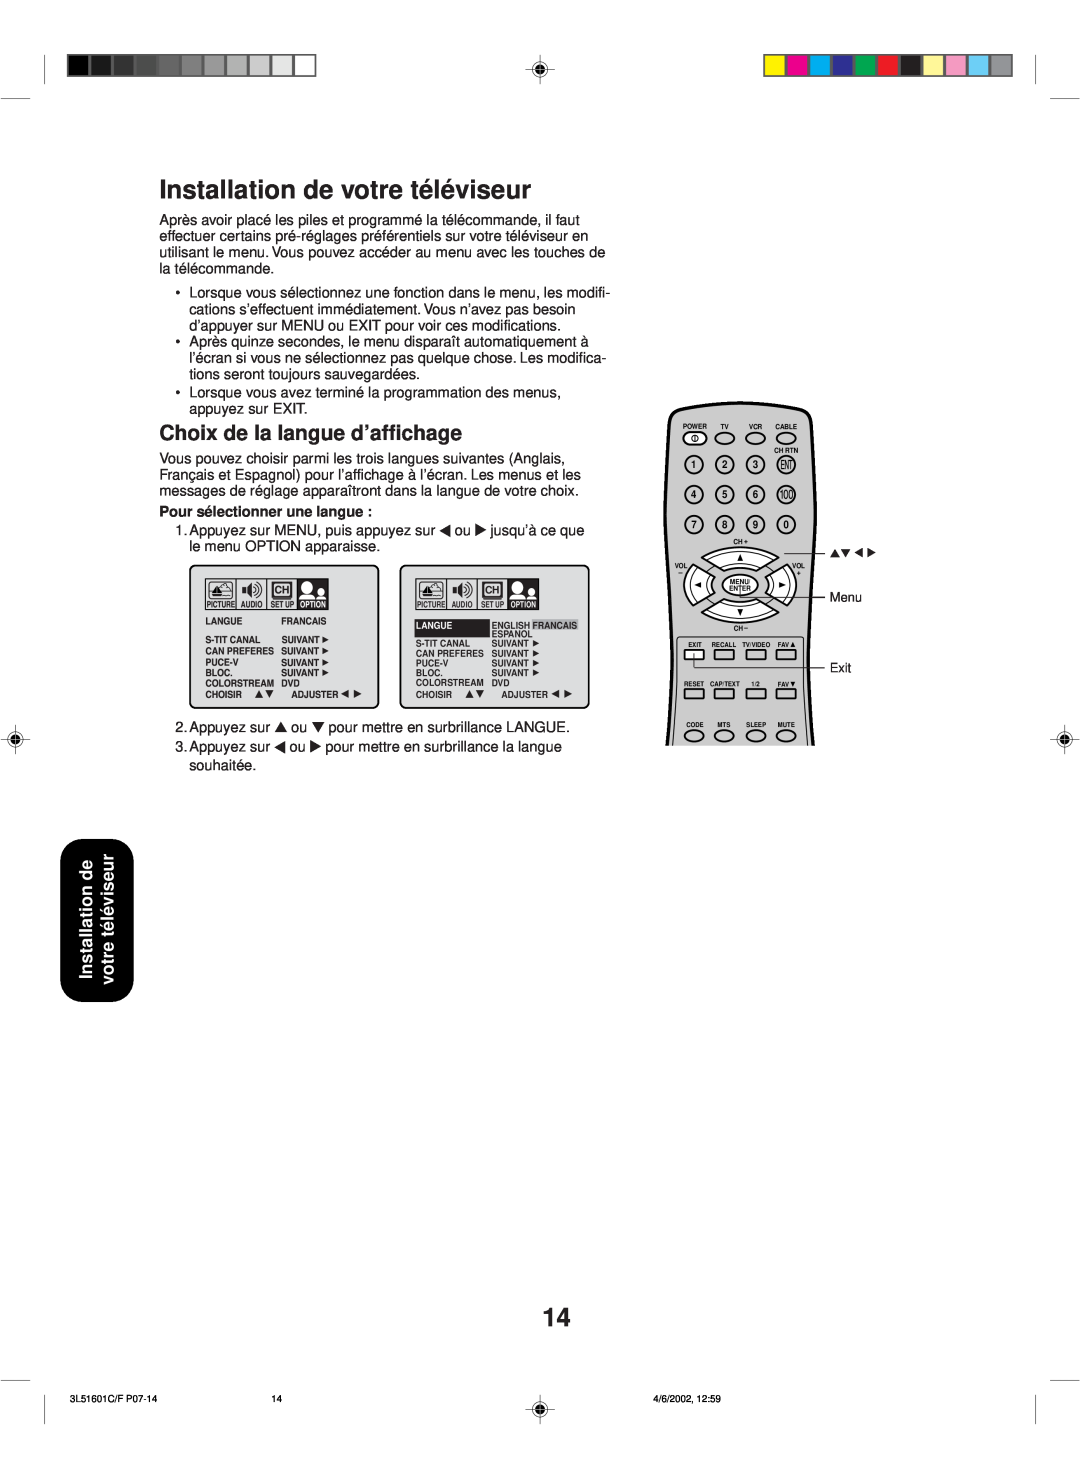 Toshiba TV 27A42 appendix Installation de votre téléviseur, Choix de la langue d’affichage, Pour sélectionner une langue 